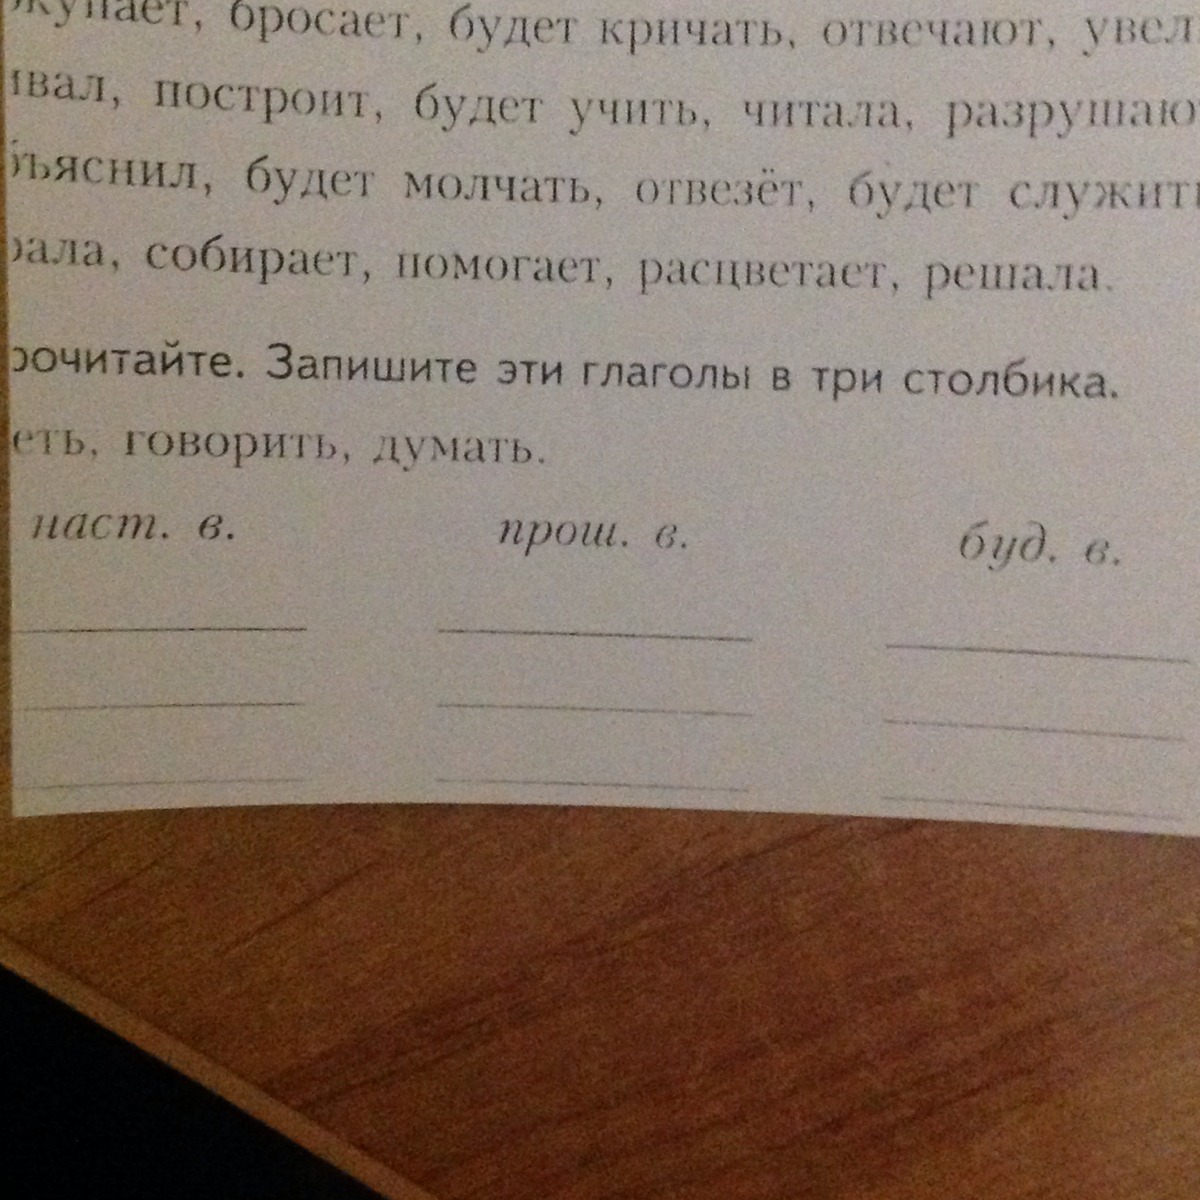 Русский язык запиши слова в 3 столбика. Запишите глаголы в три столбика. Прочитайте в пишите глаголы. Запишите слова в 3 столбика. Прочитайте и запишите глаголы.